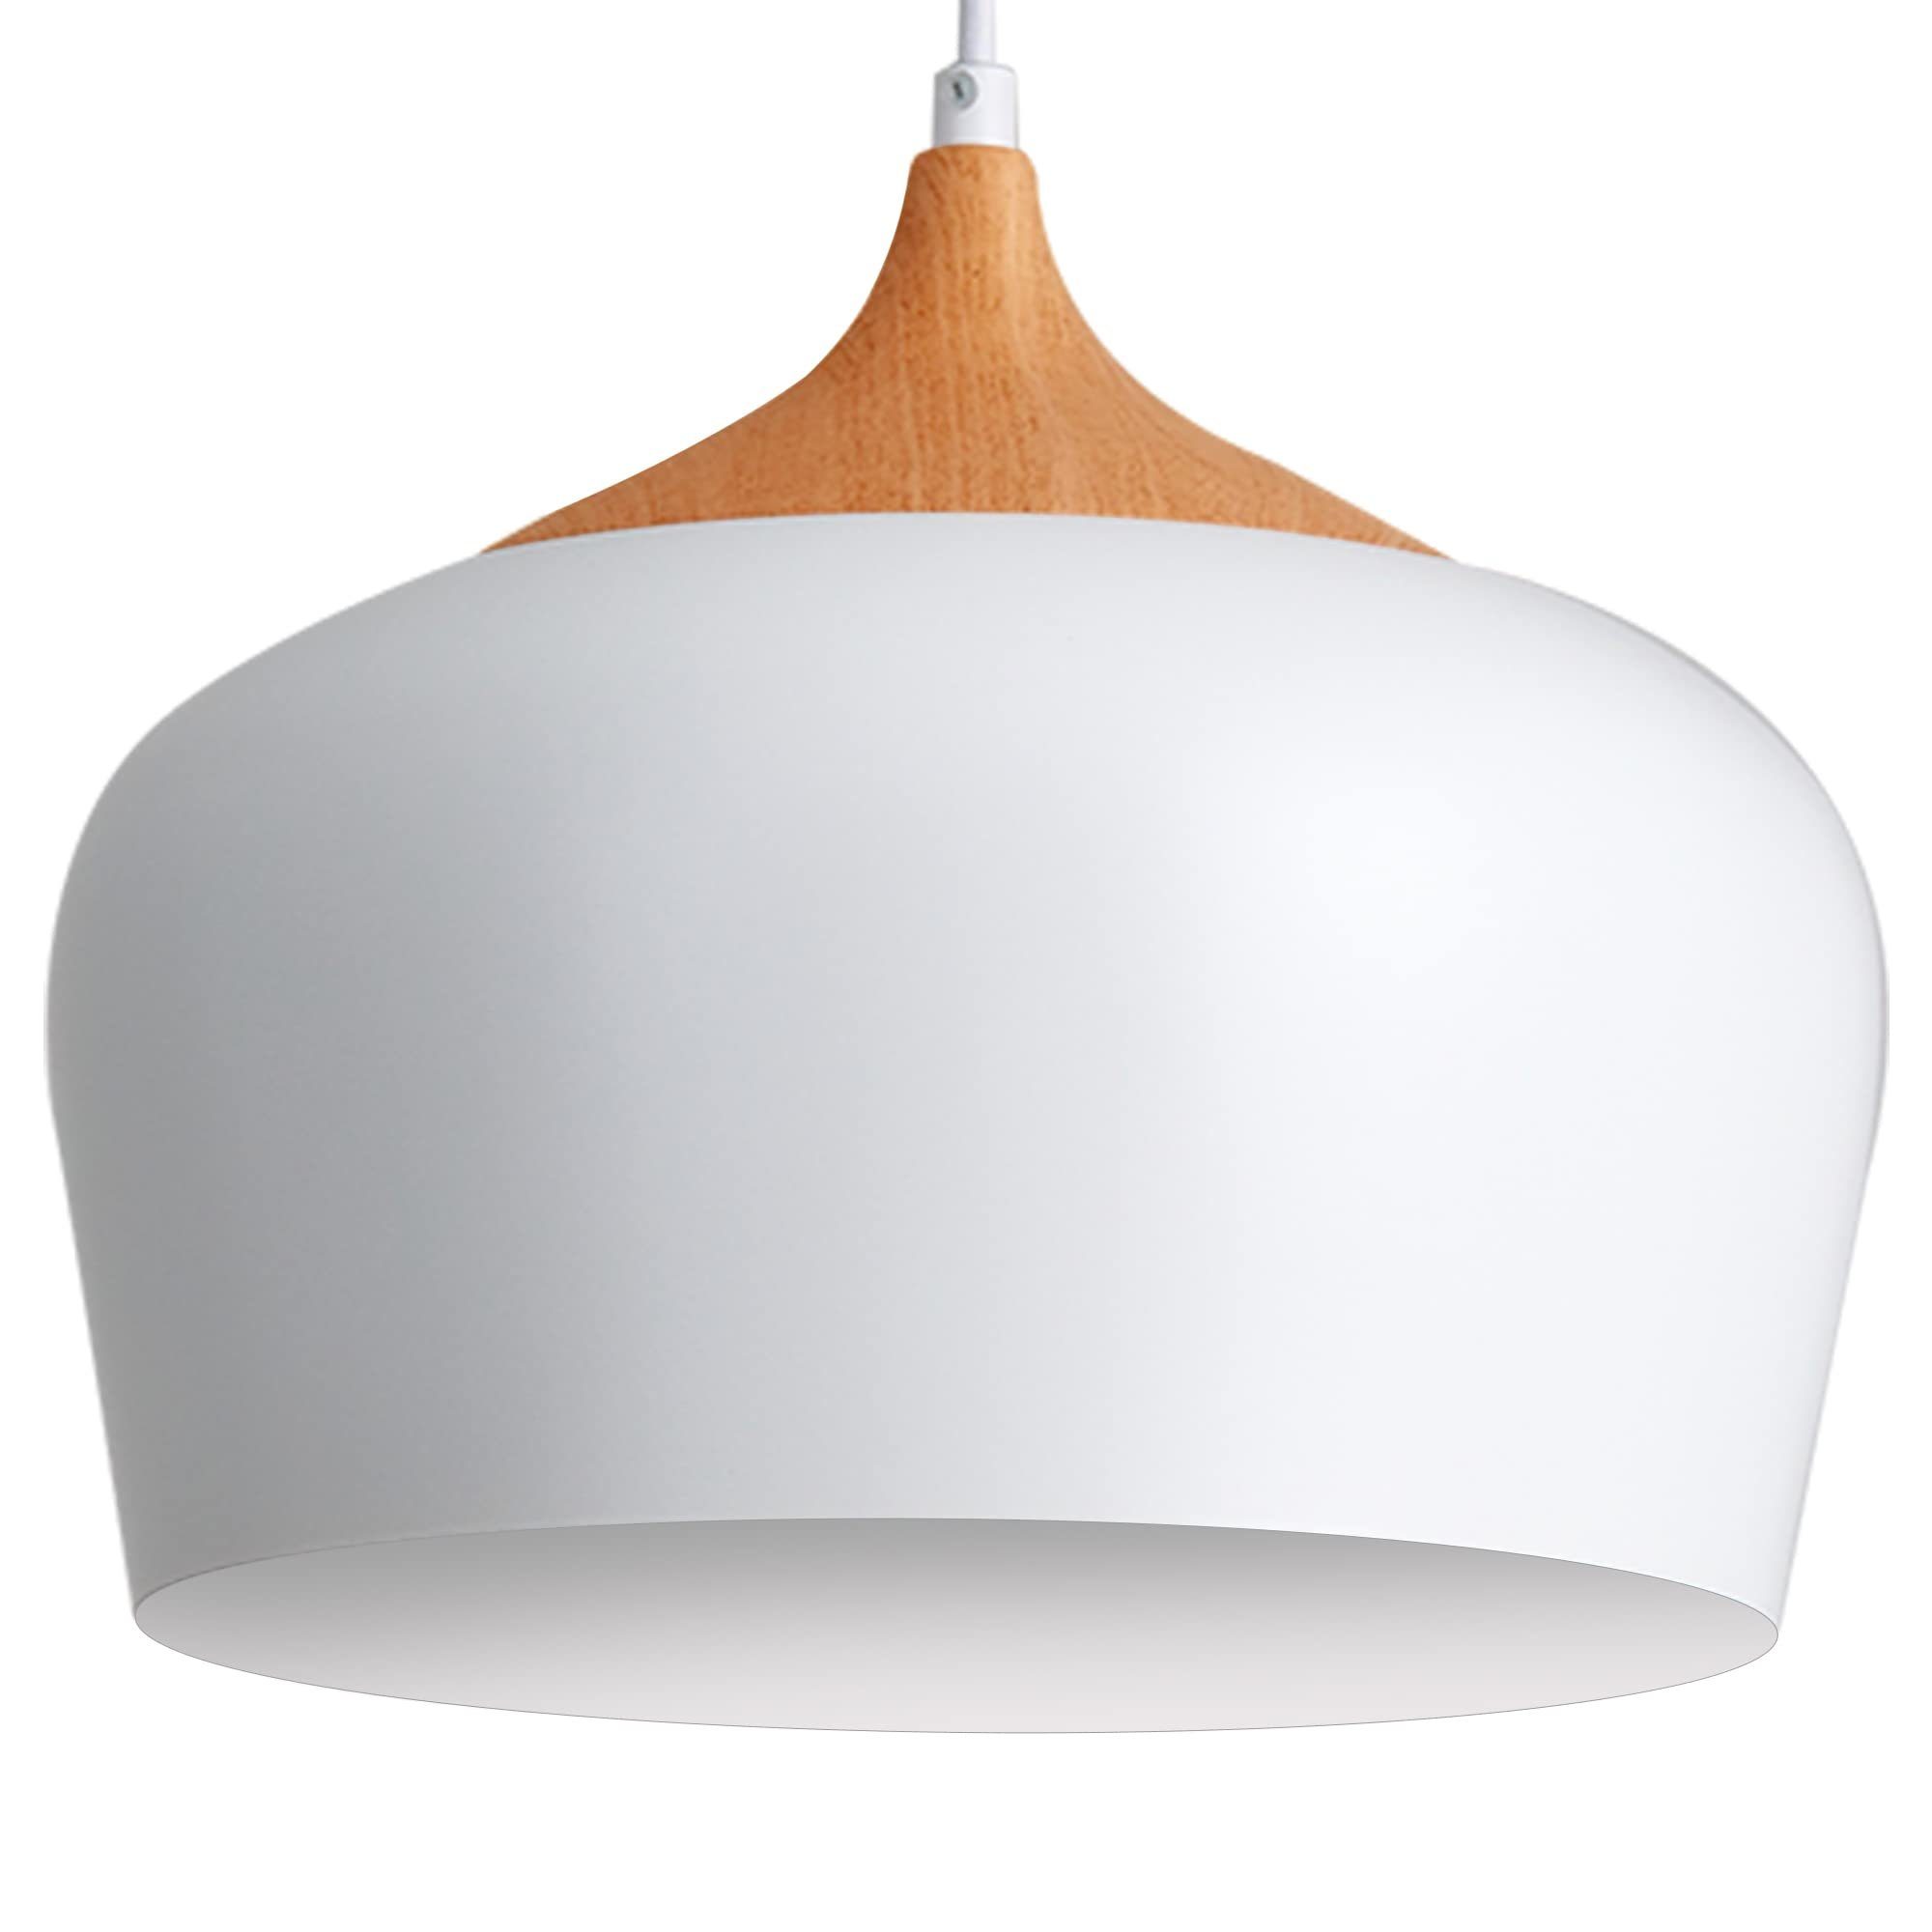 JDONG Pendelleuchte Weiß mit Holzelement Esszimmer Lampe Hängelampe E27 Höhenverstellbar, ohne Leuchtmittel, Skandinavischen Modern Hängelampe für Esstisch Wohnzimmer